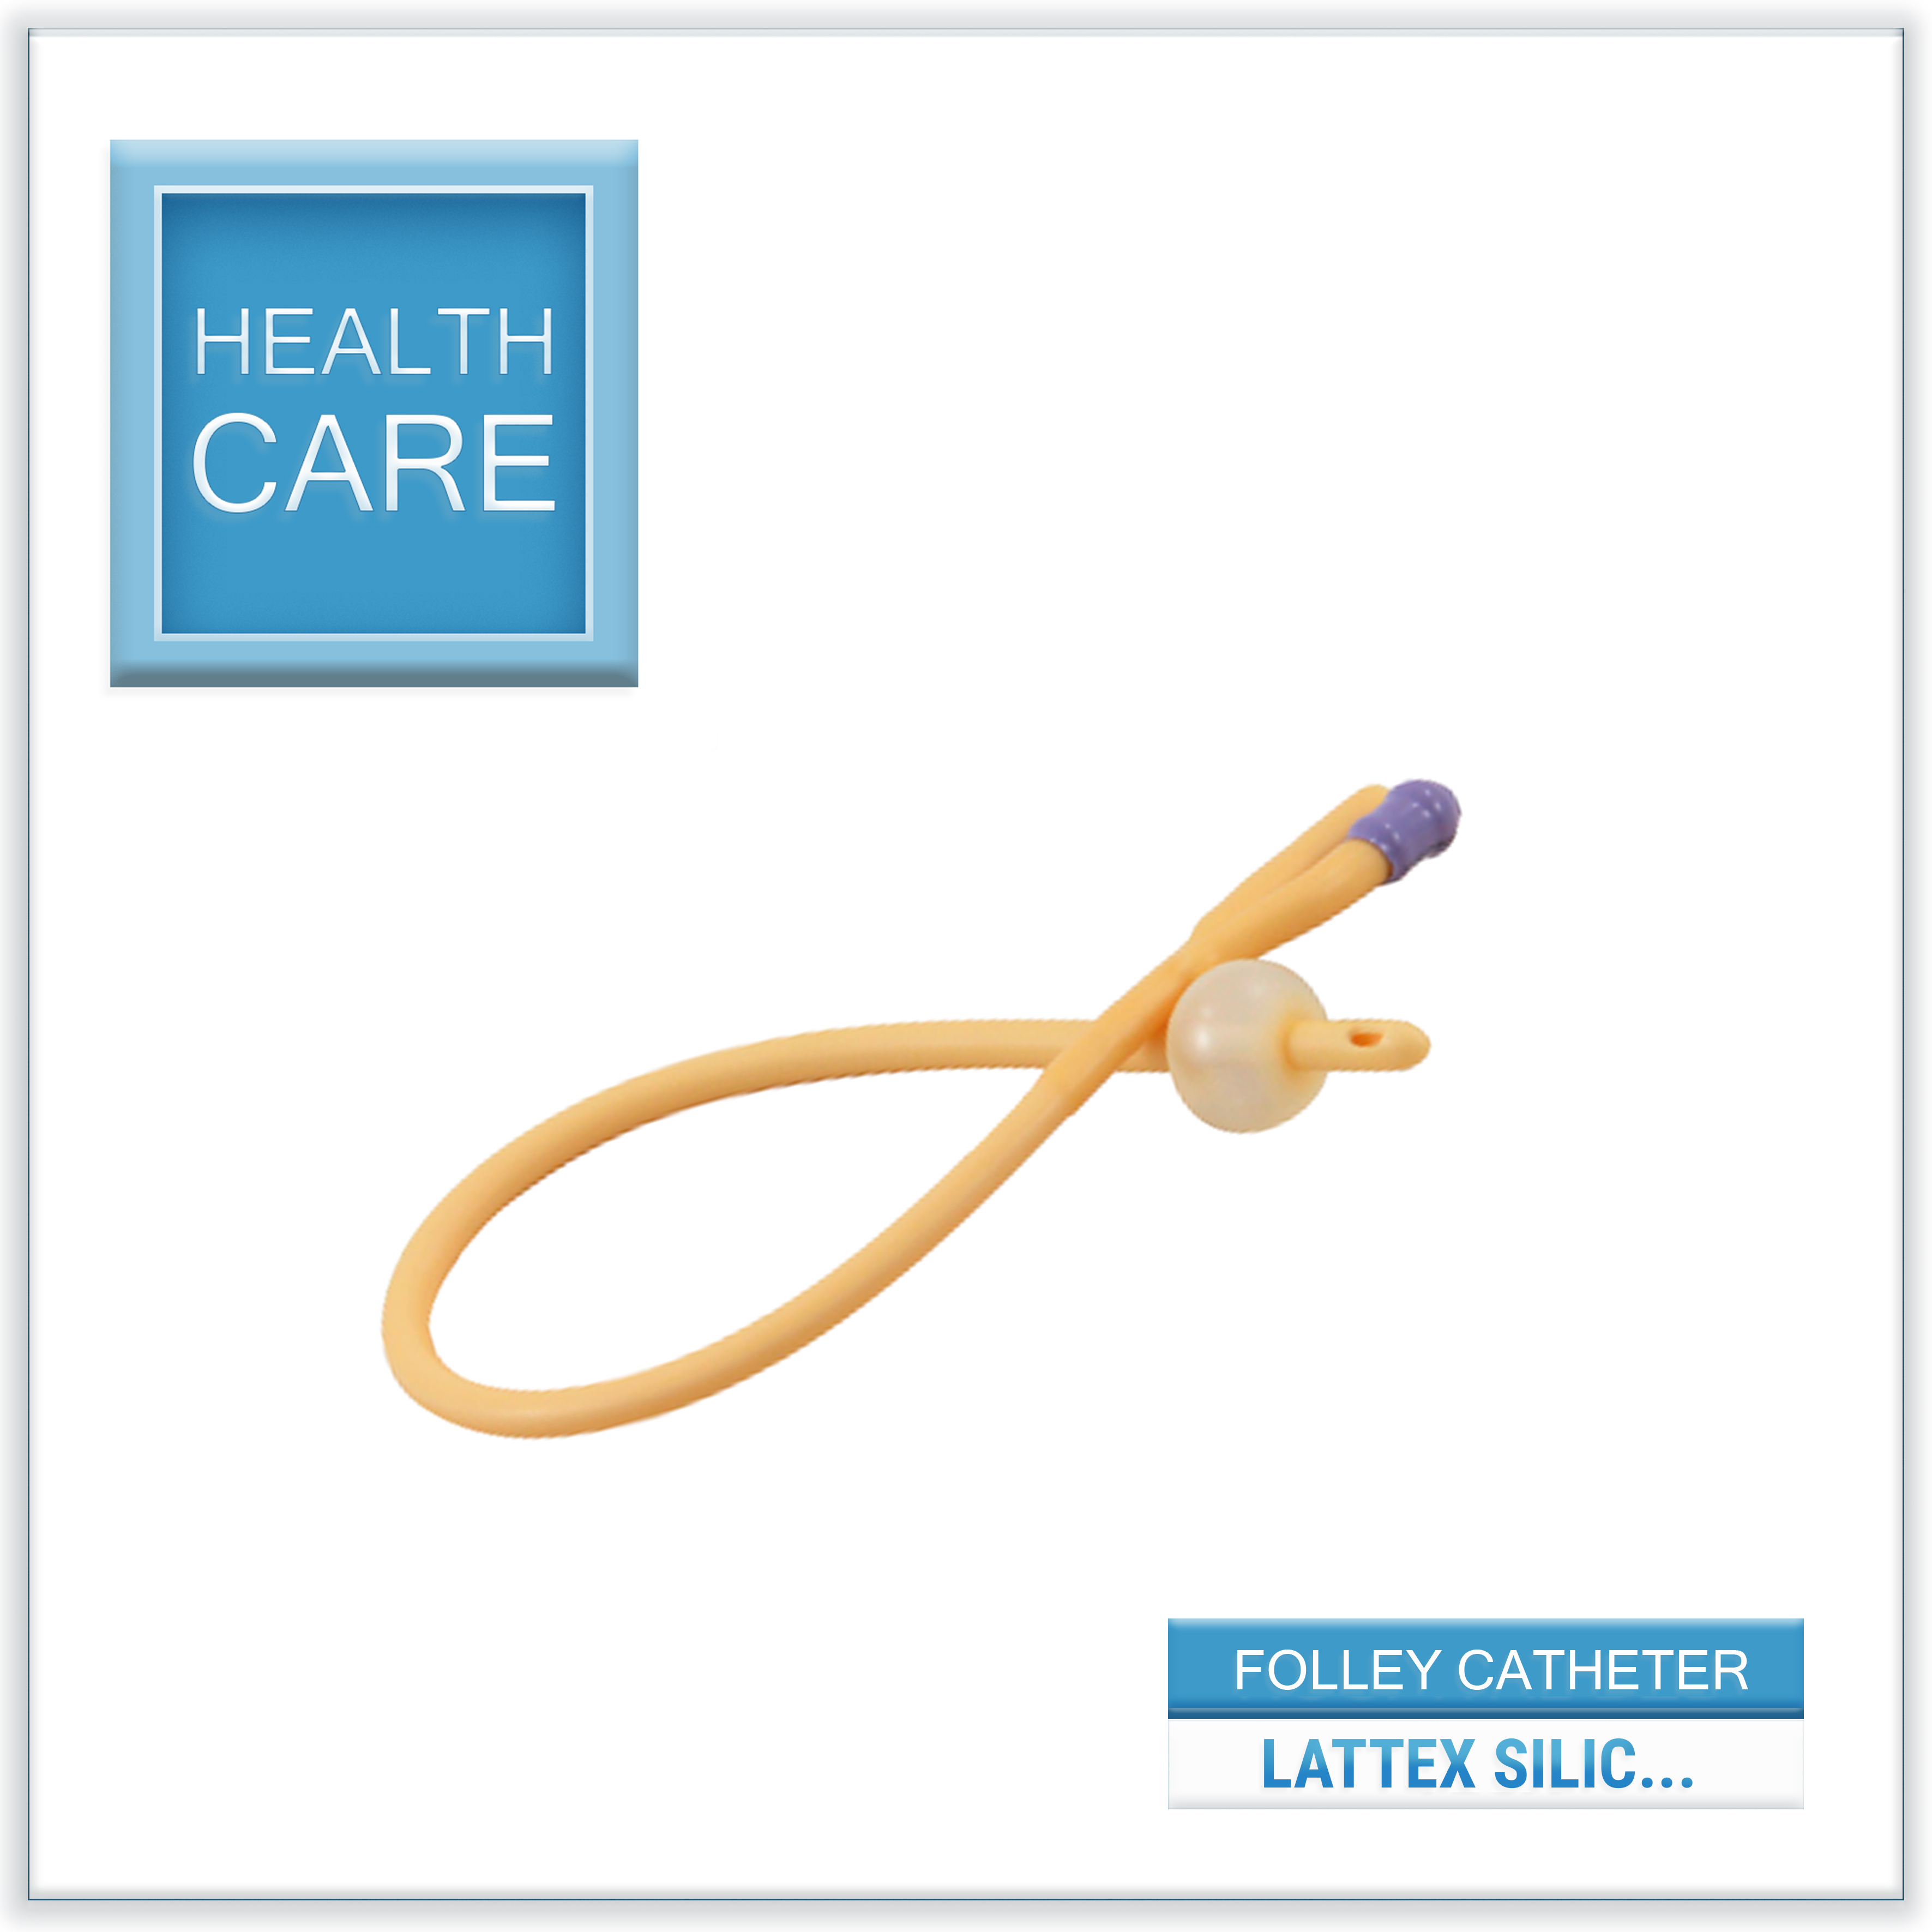 Foley Catheter - Latex siliconized